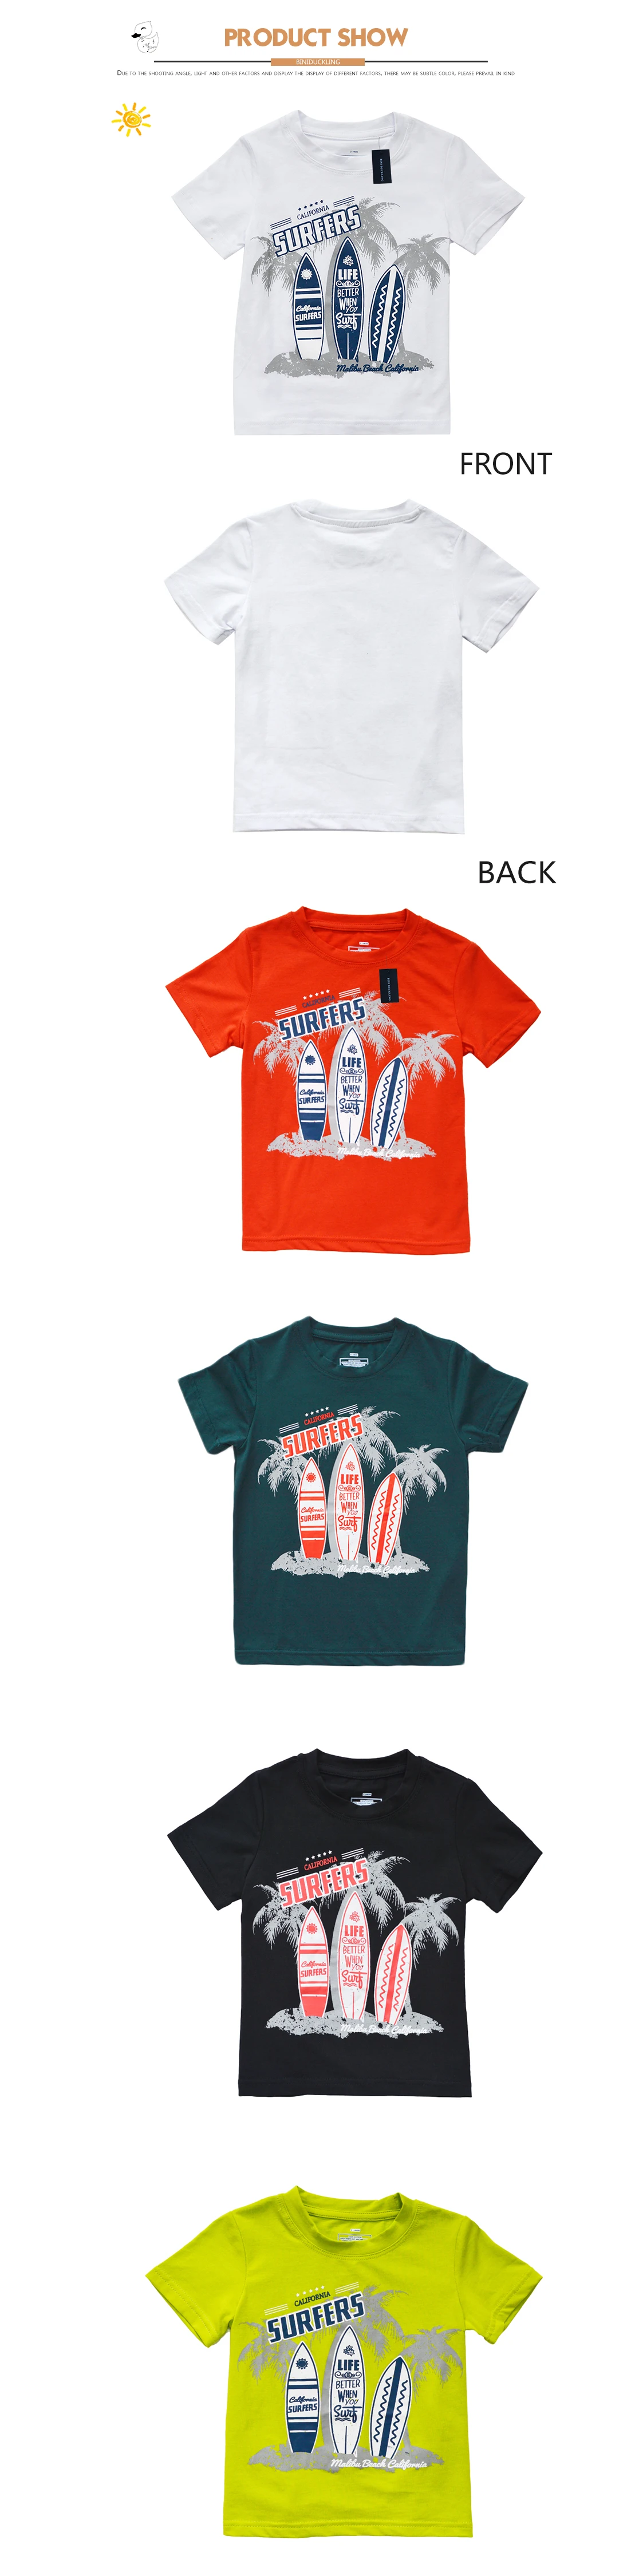 BINIDUCKLING/летние хлопковые футболки для мальчиков; футболки с коротким рукавом с принтом; одежда с рисунком кокосового дерева для маленьких детей